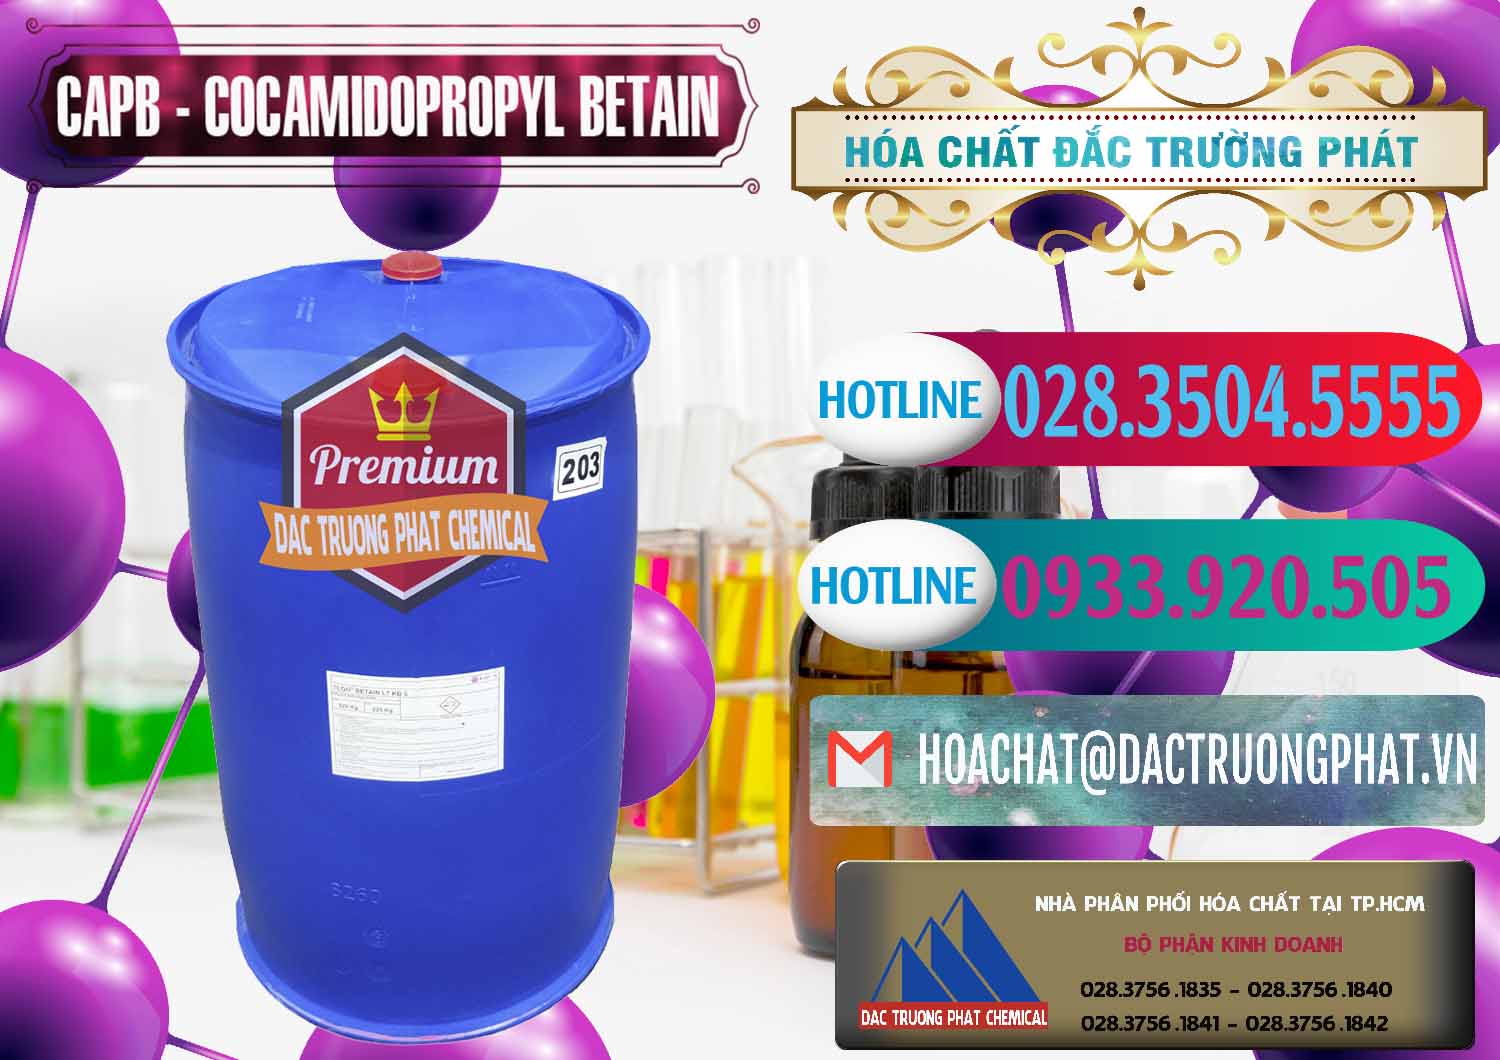 Nơi chuyên bán và phân phối Cocamidopropyl Betaine - CAPB Tego Indonesia - 0327 - Công ty kinh doanh - cung cấp hóa chất tại TP.HCM - truongphat.vn